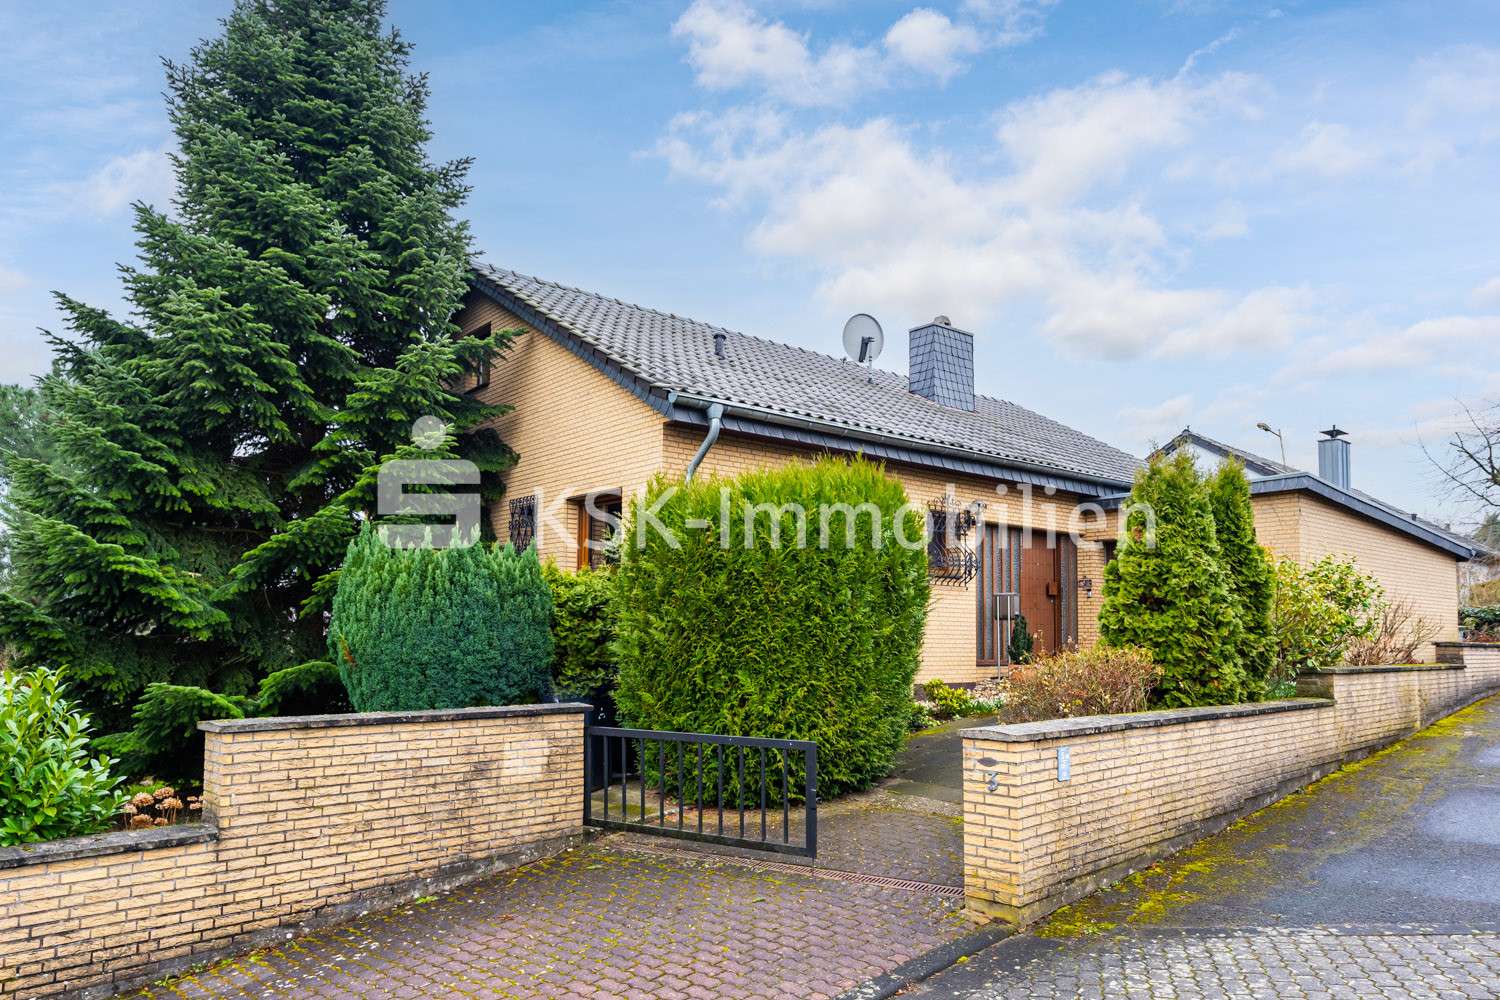 155772 Außenansicht - Einfamilienhaus in 53639 Königswinter / Vinxel mit 118m² günstig kaufen